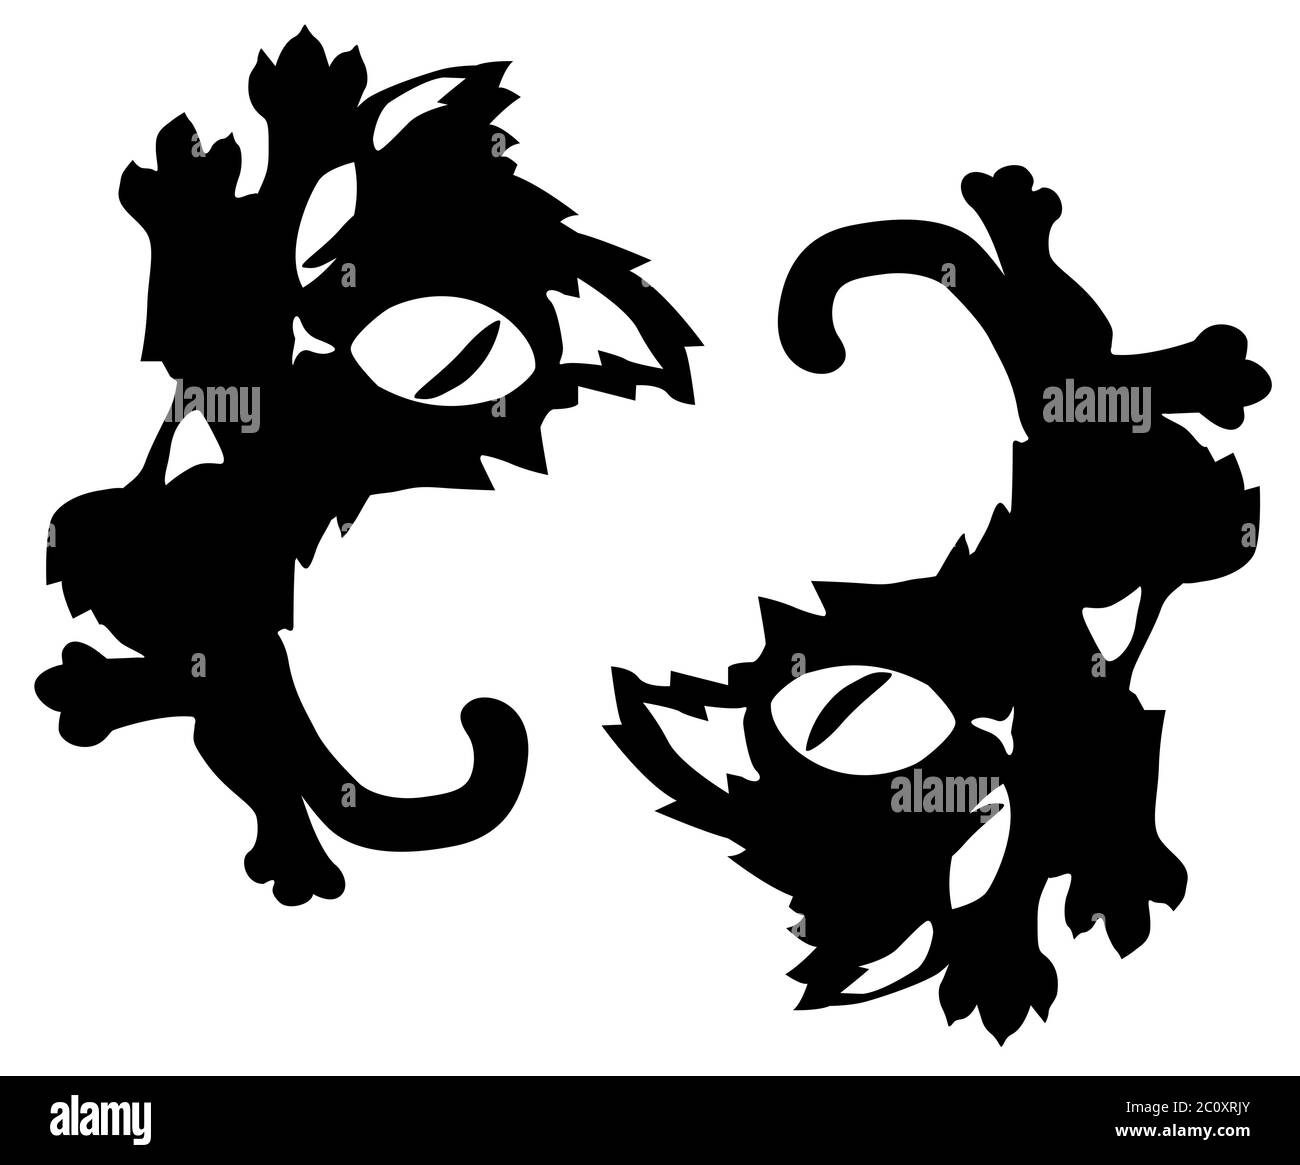 Dessin animé de chat personnage miroir pose accroissant regardant sur l'épaule stencil noir, illustration vectorielle, horizontal, isolé Illustration de Vecteur